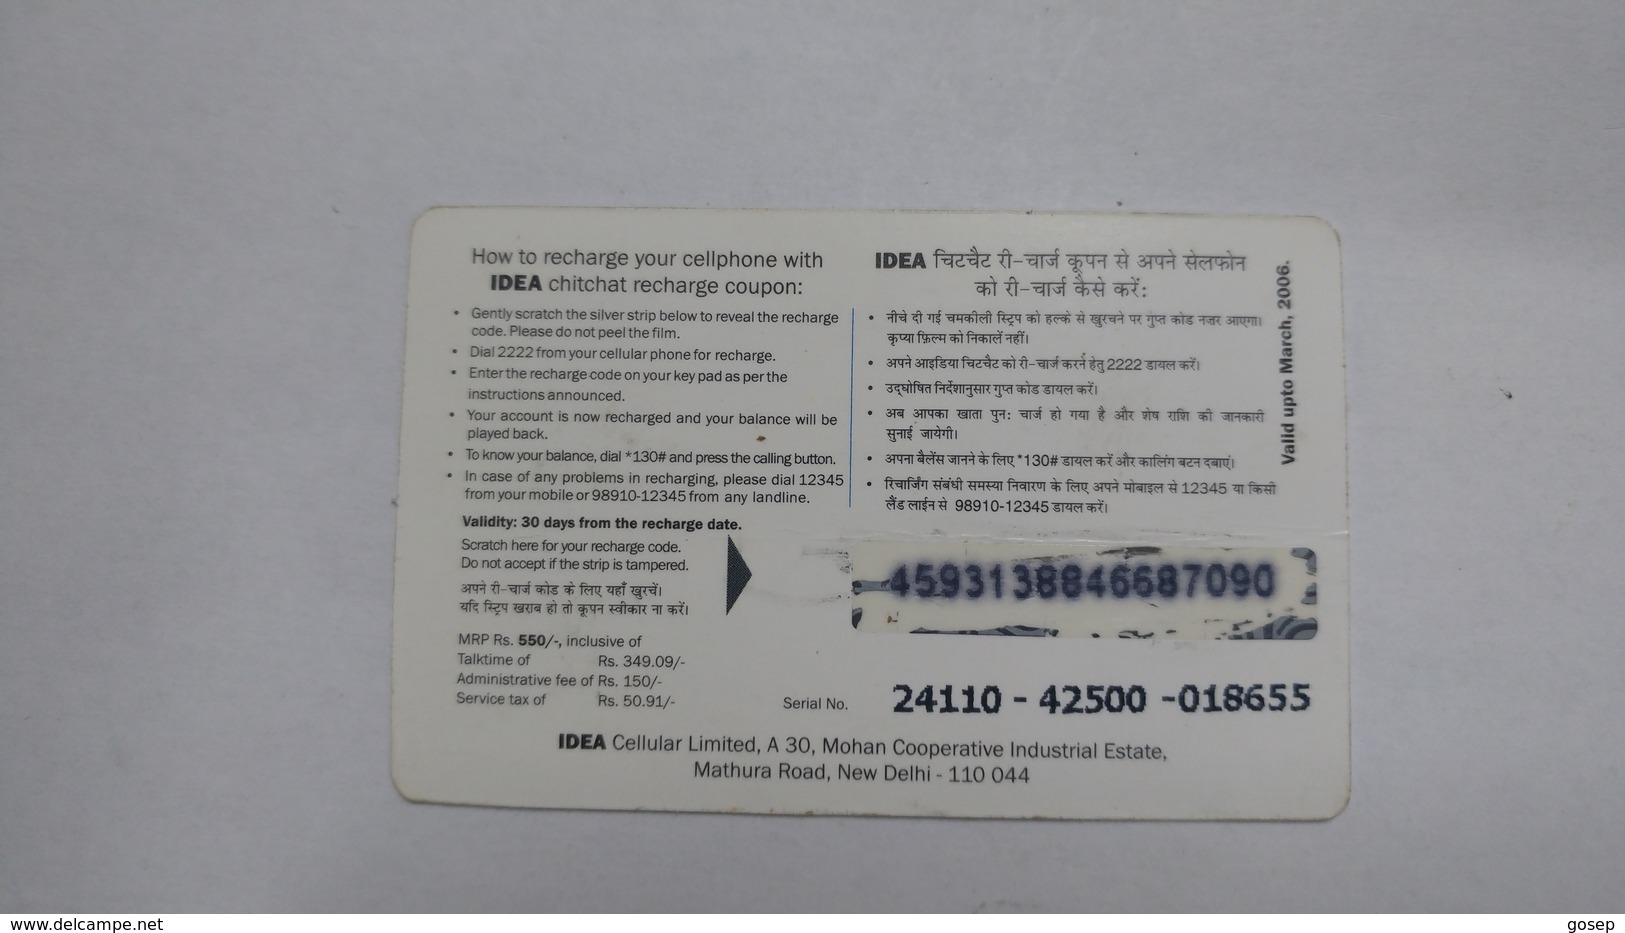 India-idea-full Talktime-card-(35h)-(rs.550)-(459313884668709)-(new Delhi)-()-card Used+1 Card Prepiad Free - India